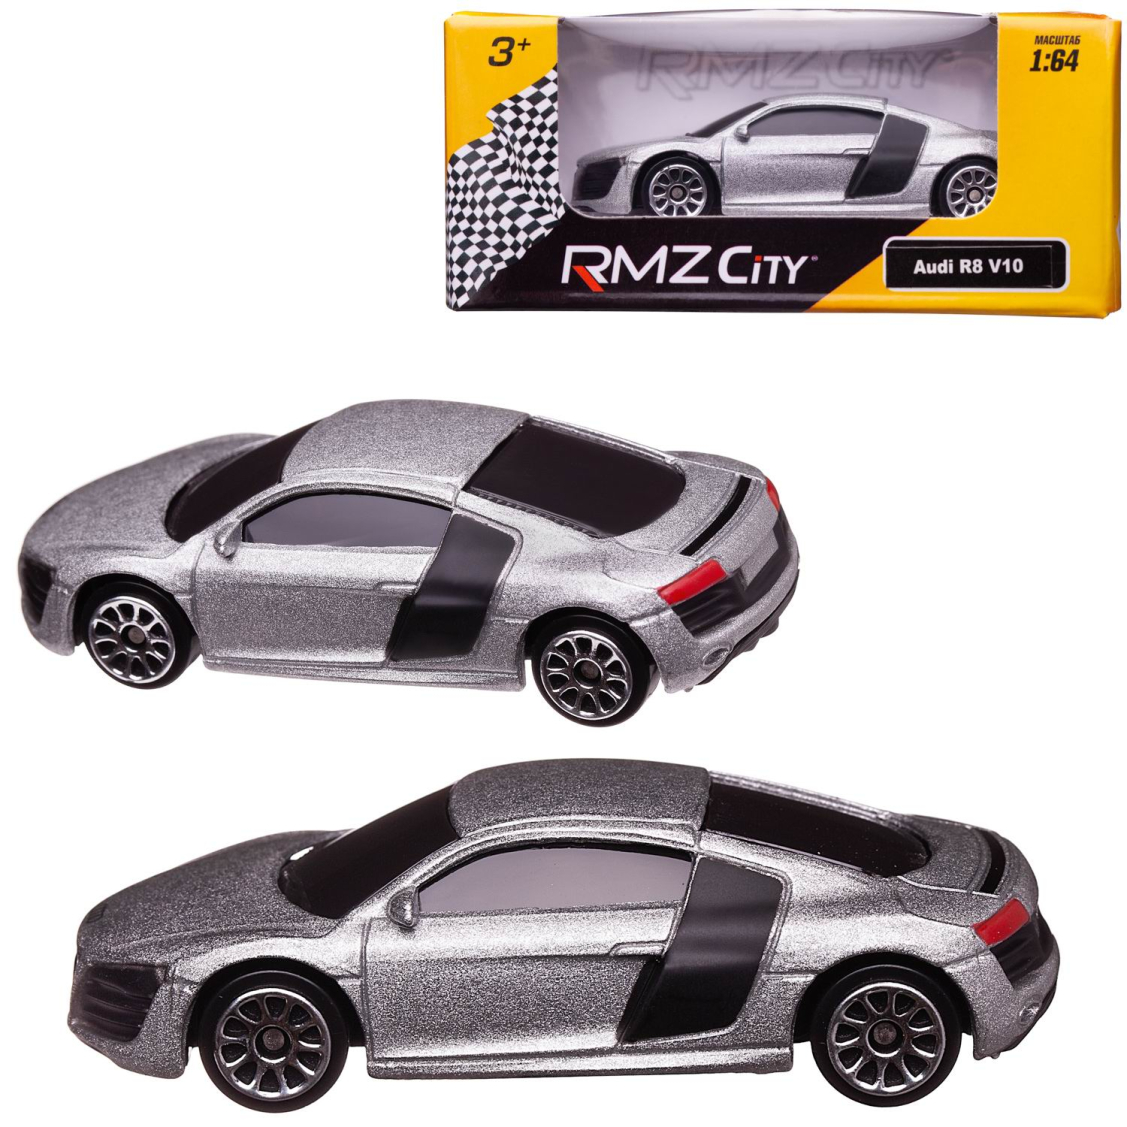 Машинка металлическая Uni-Fortune RMZ City 1:64 Audi R8 V10, без механизмов, (серебристый)